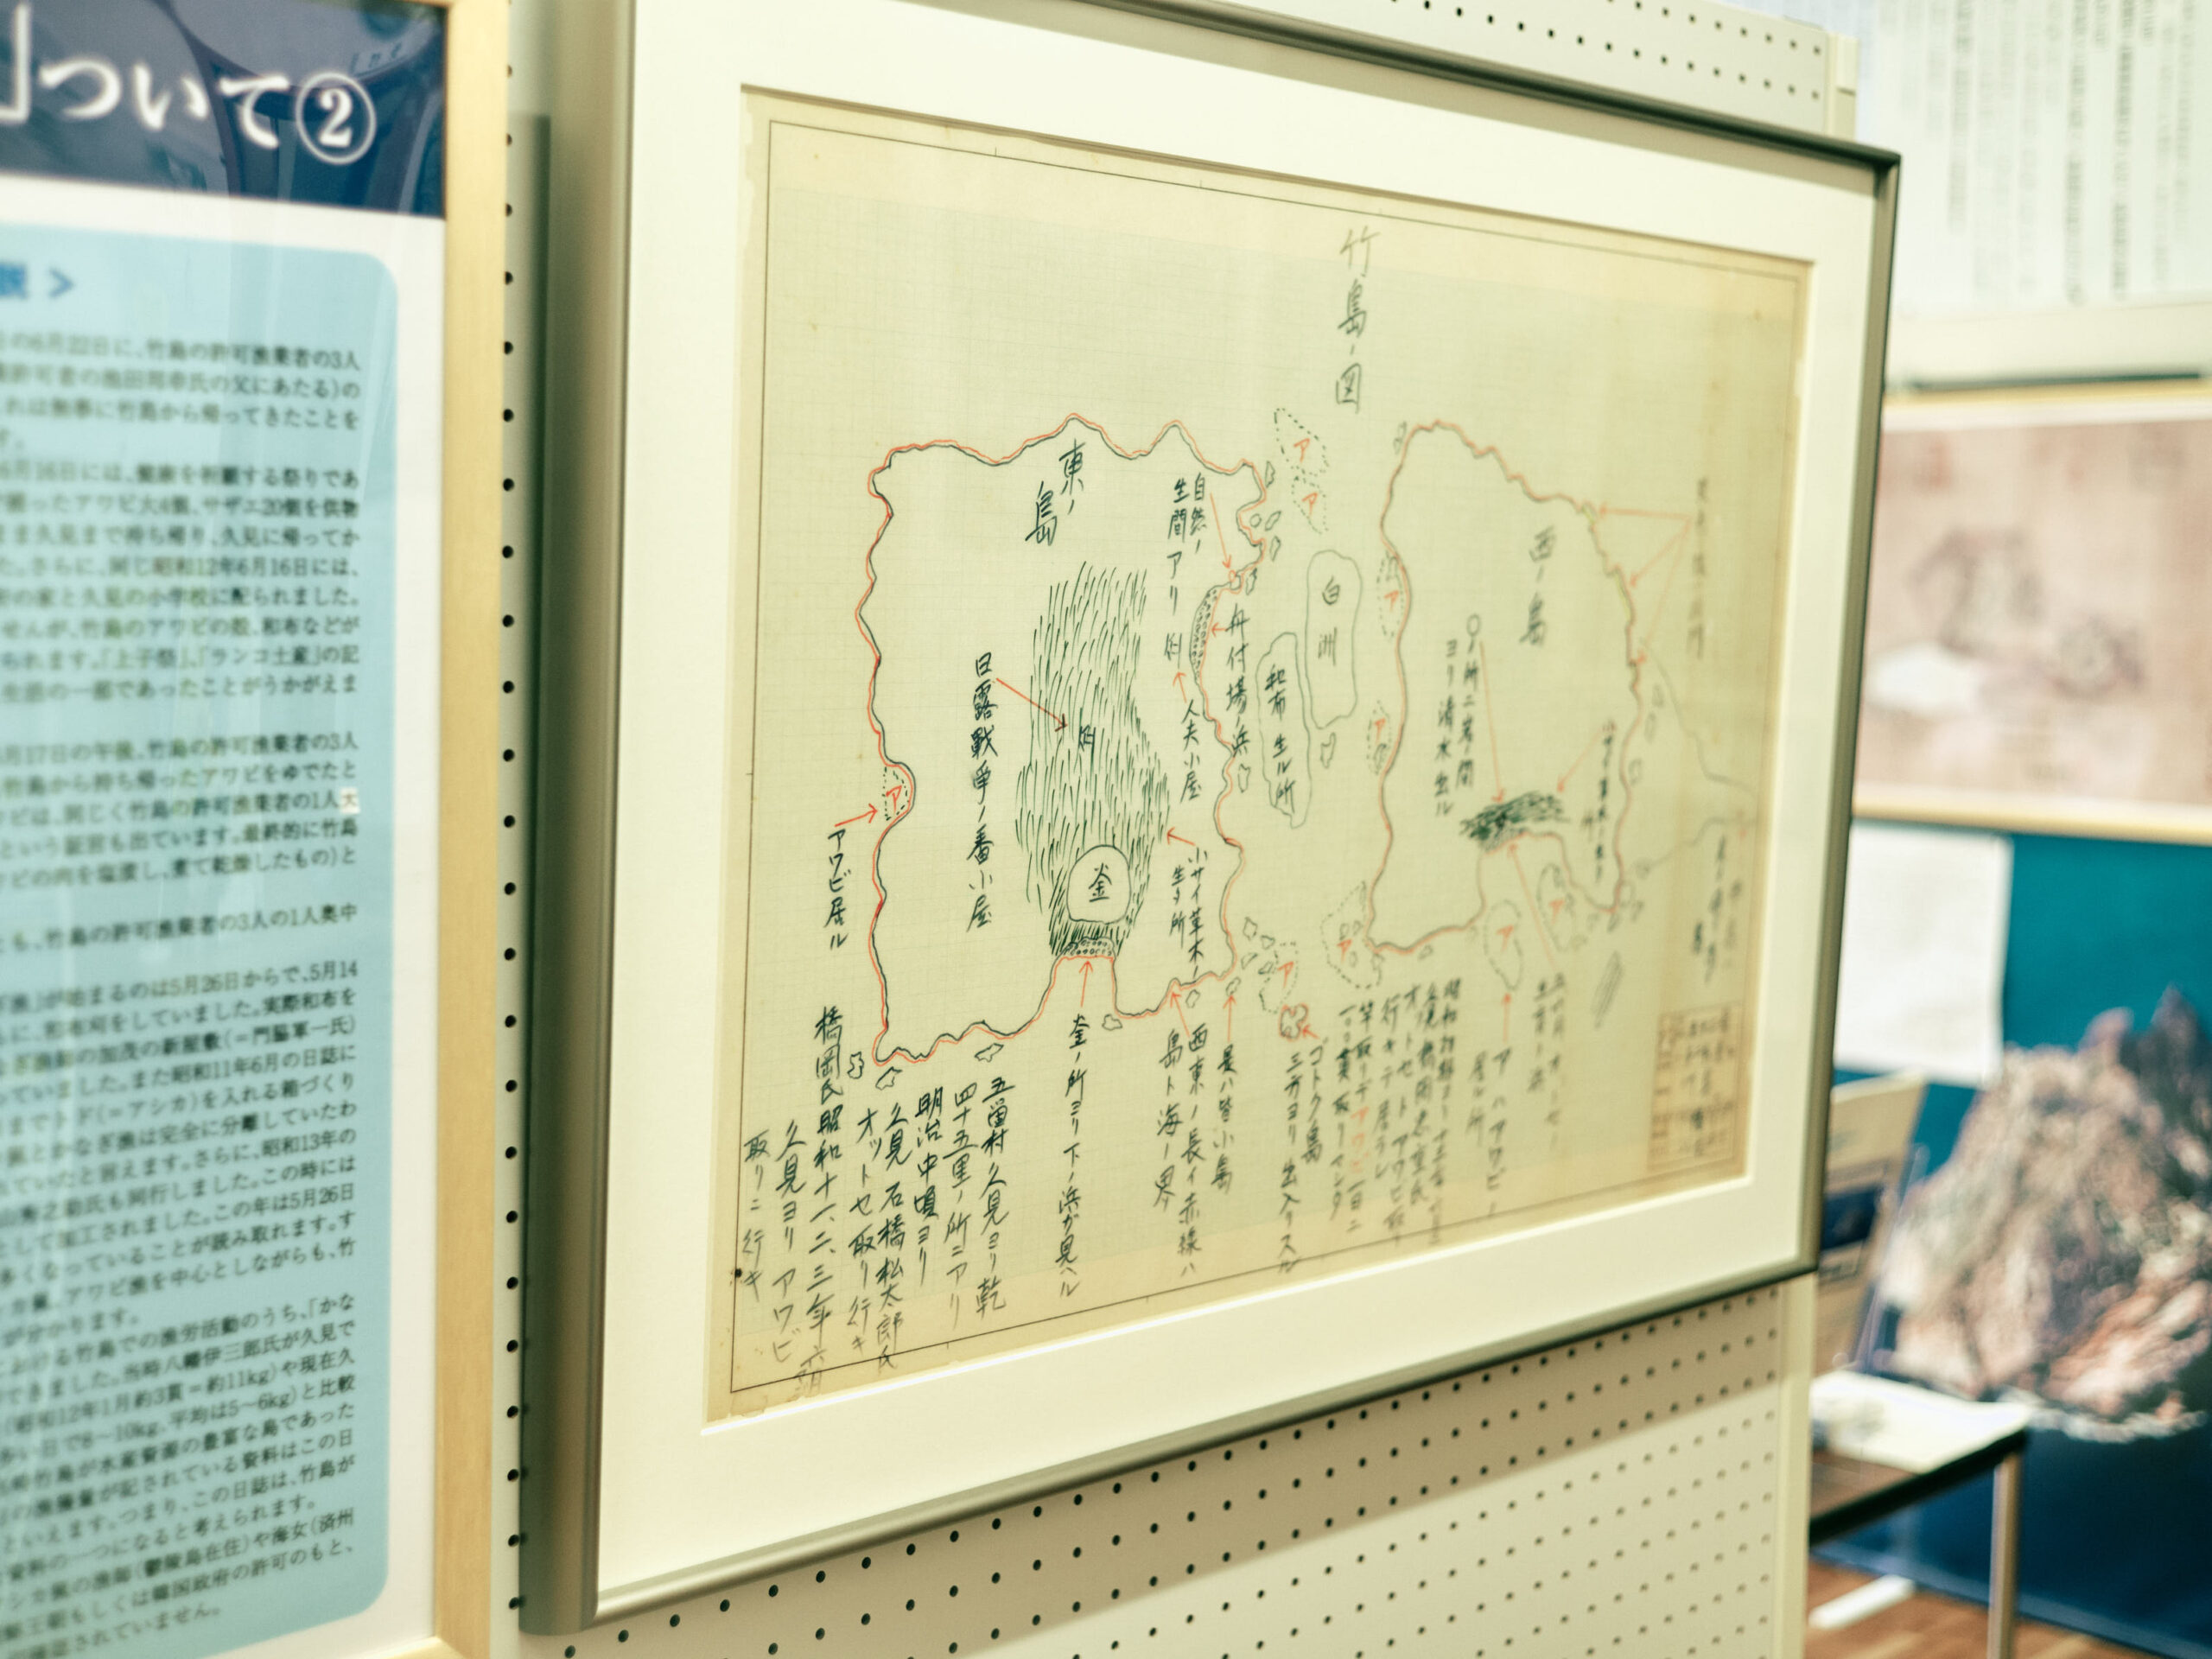 案内してくださった方のお祖父さんが書いた竹島の地図。